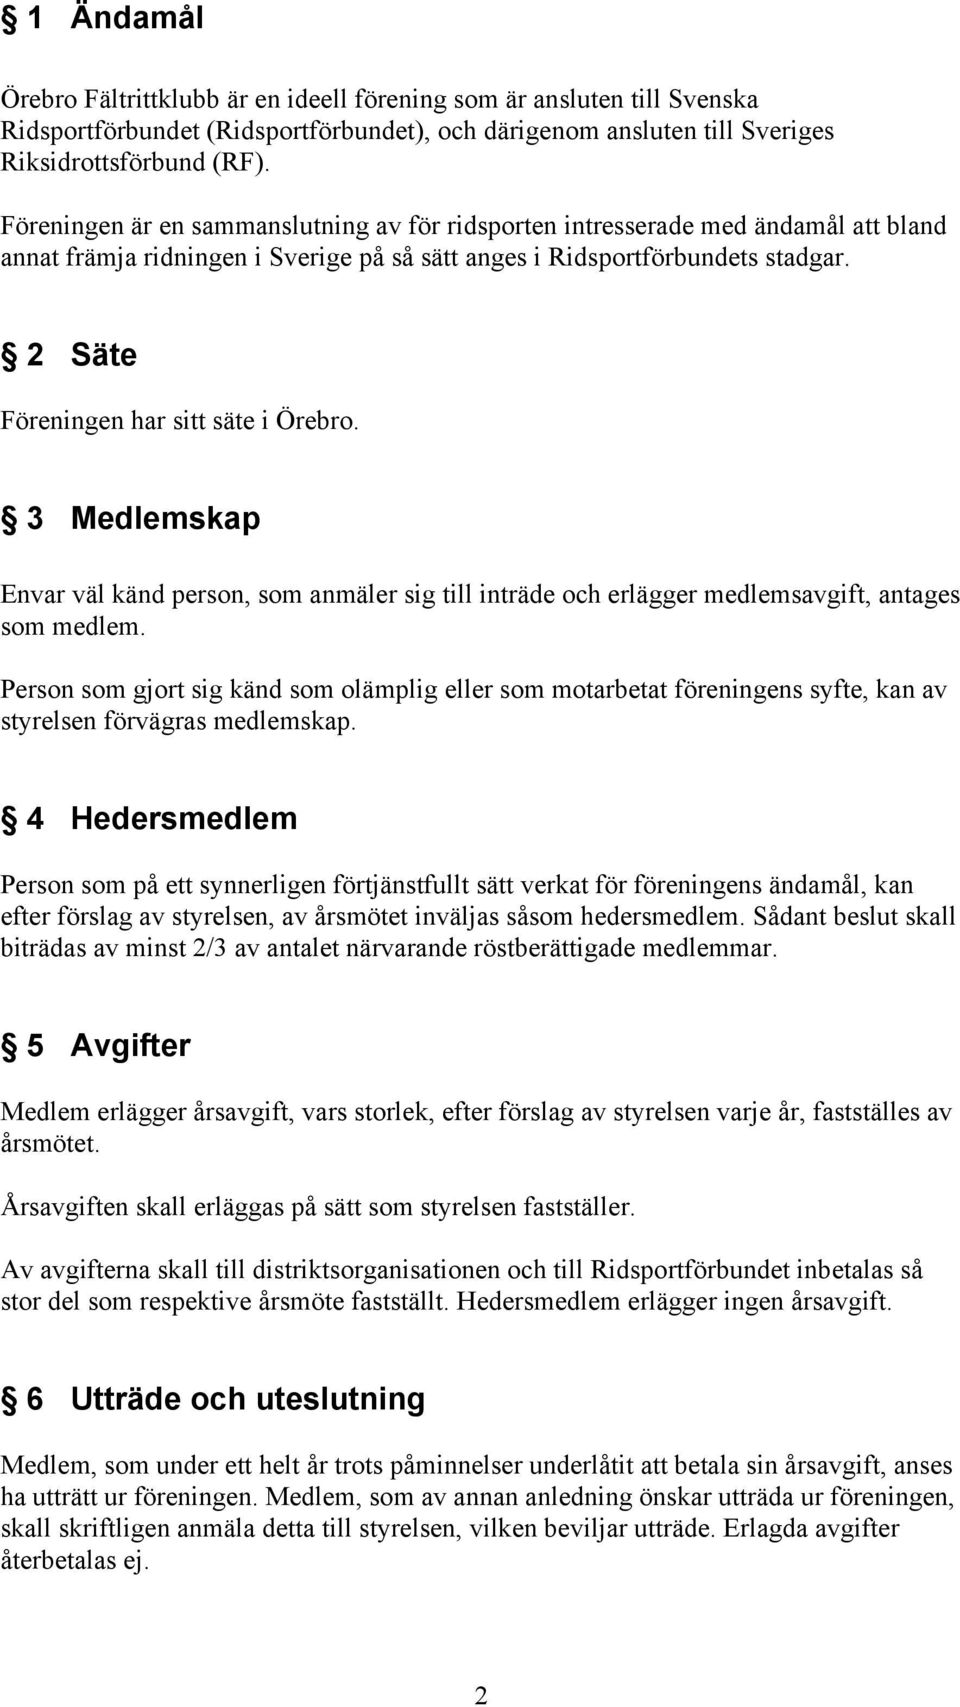 2 Säte Föreningen har sitt säte i Örebro. 3 Medlemskap Envar väl känd person, som anmäler sig till inträde och erlägger medlemsavgift, antages som medlem.